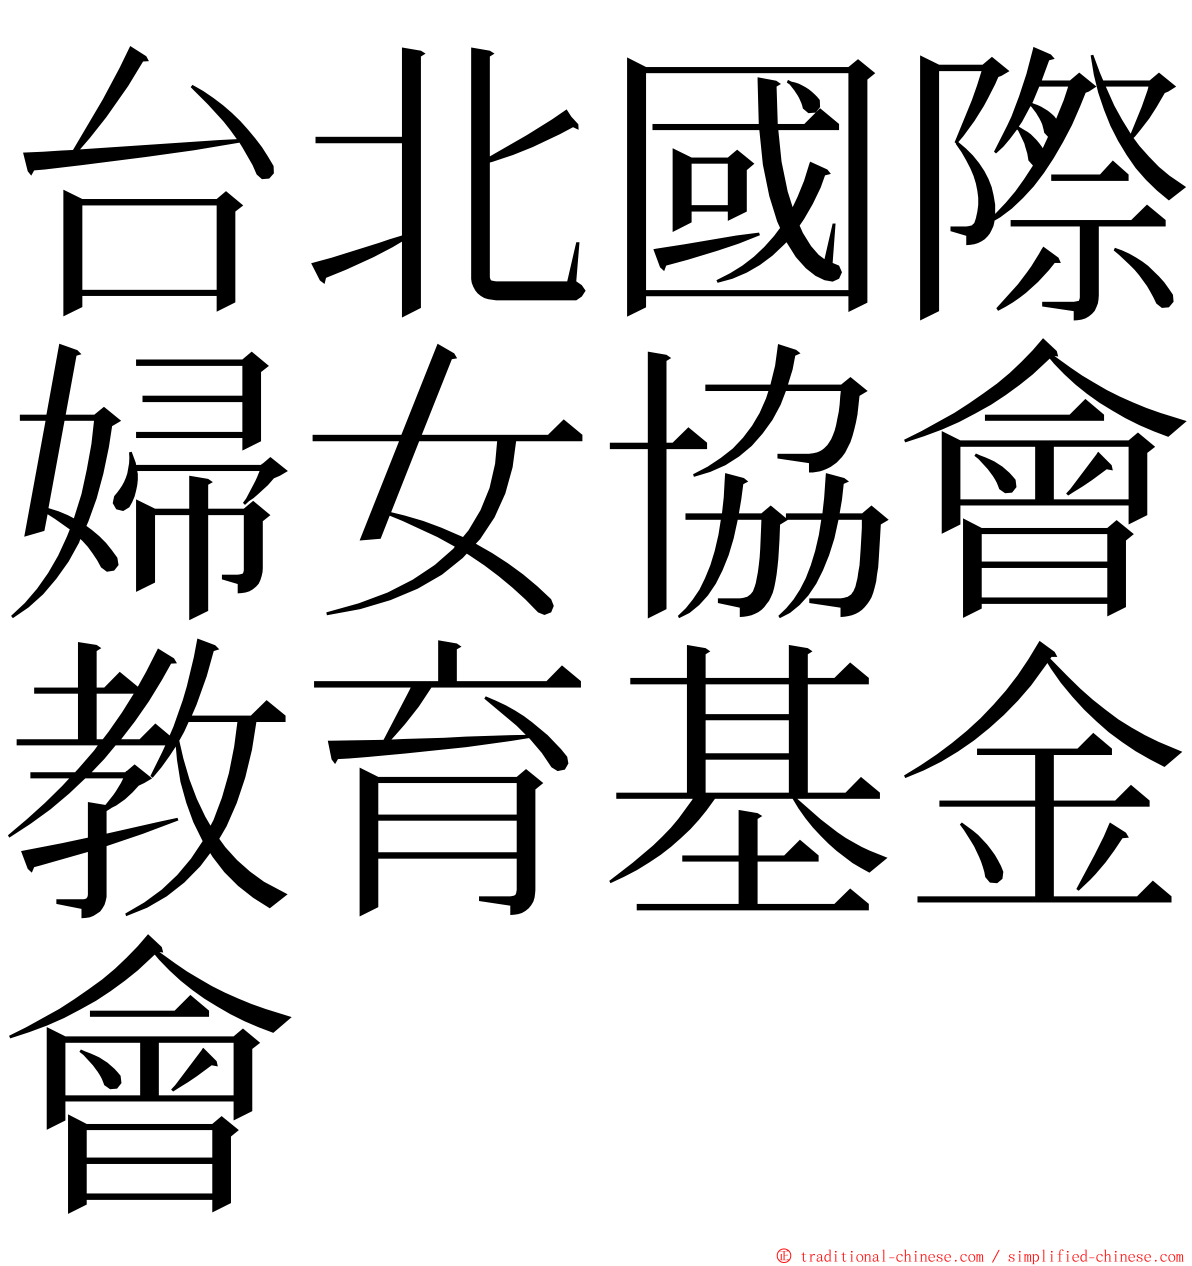 台北國際婦女協會教育基金會 ming font